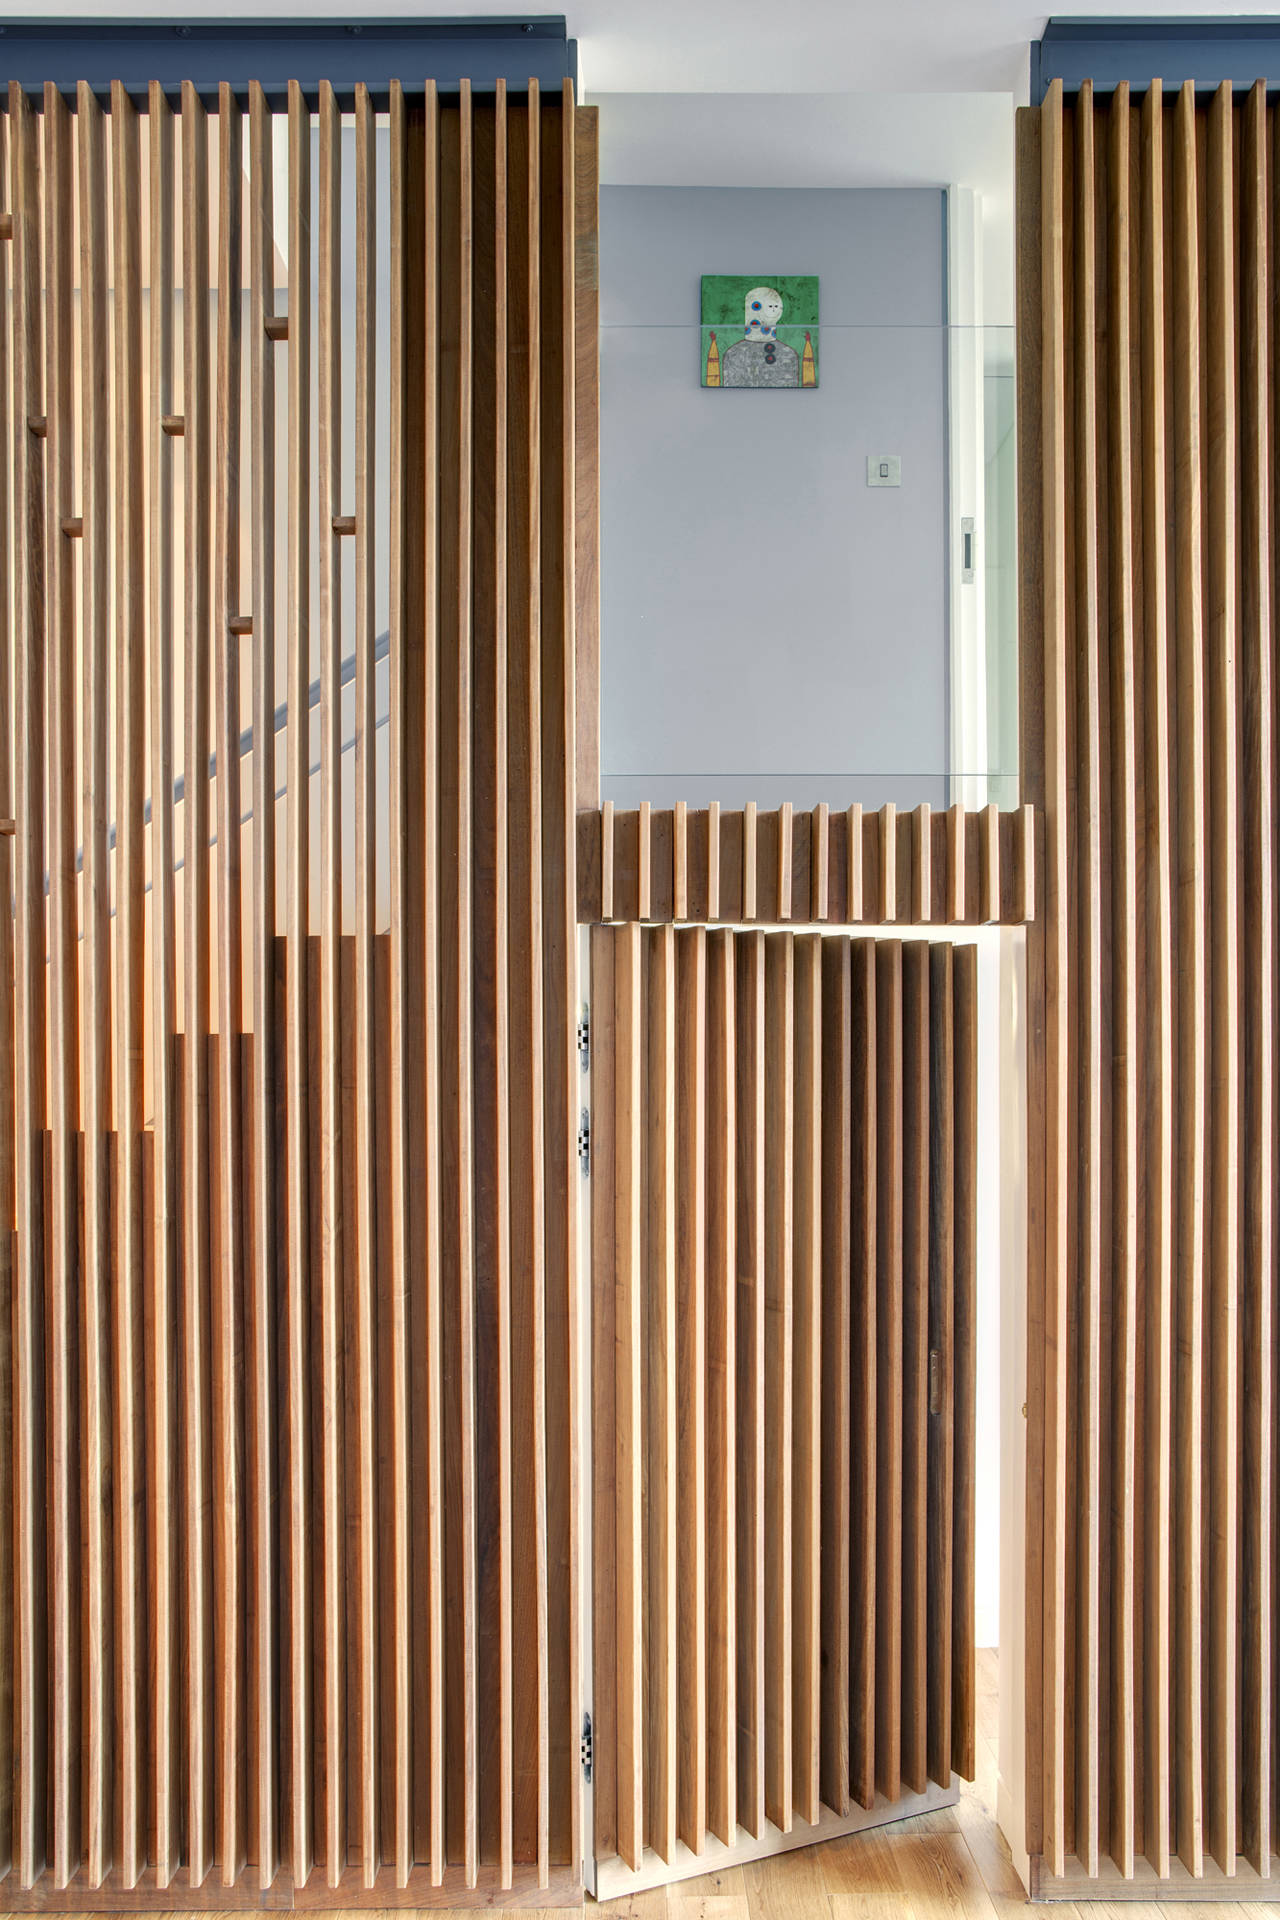 Wedo thiết kế nội thất nhà đẹp và sang trọng với gỗ tự nhiên